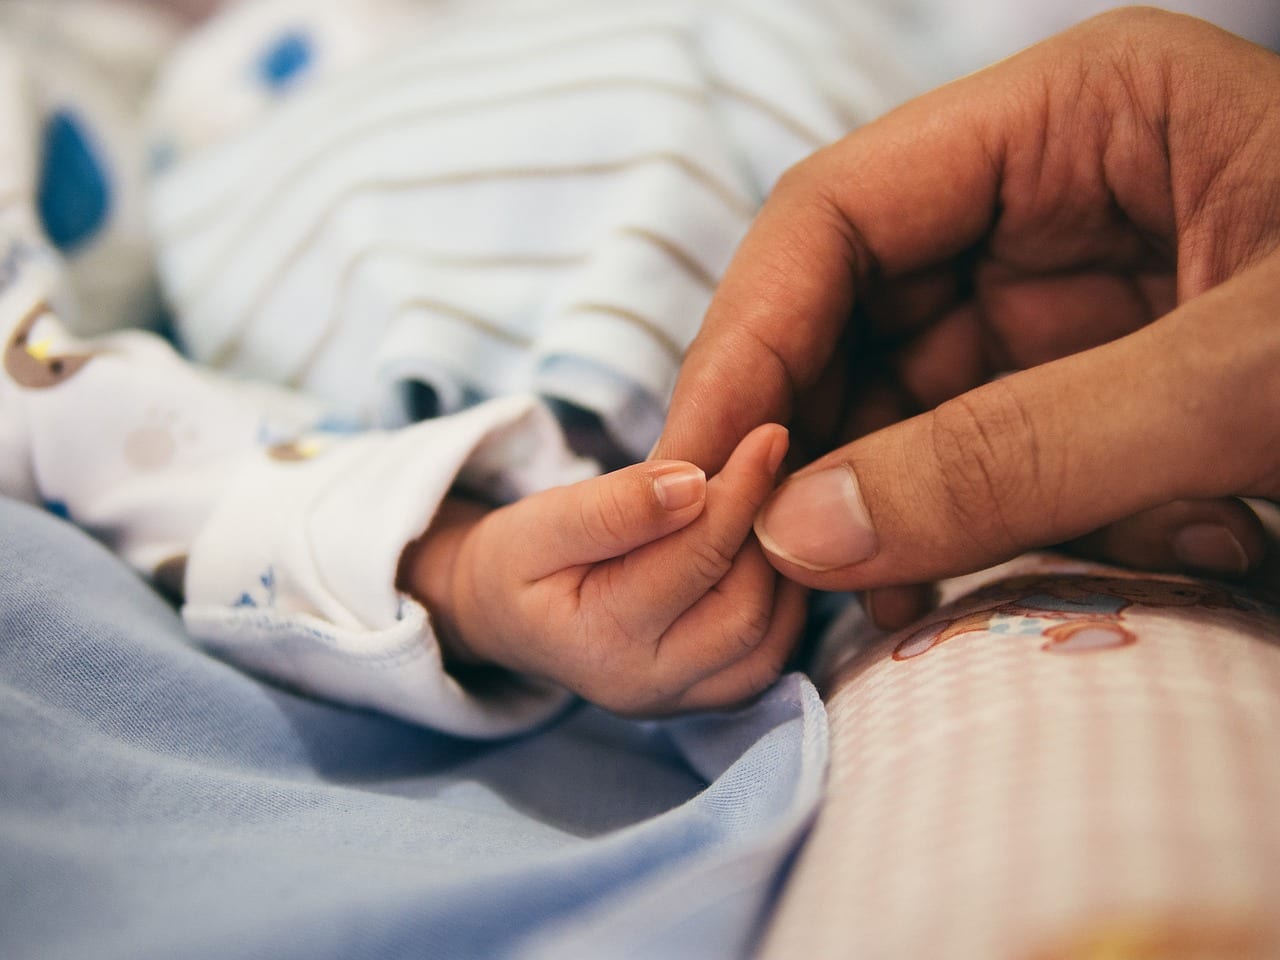 В Липецке новорожденной девочке чуть не ампутировали руку из-за катетера